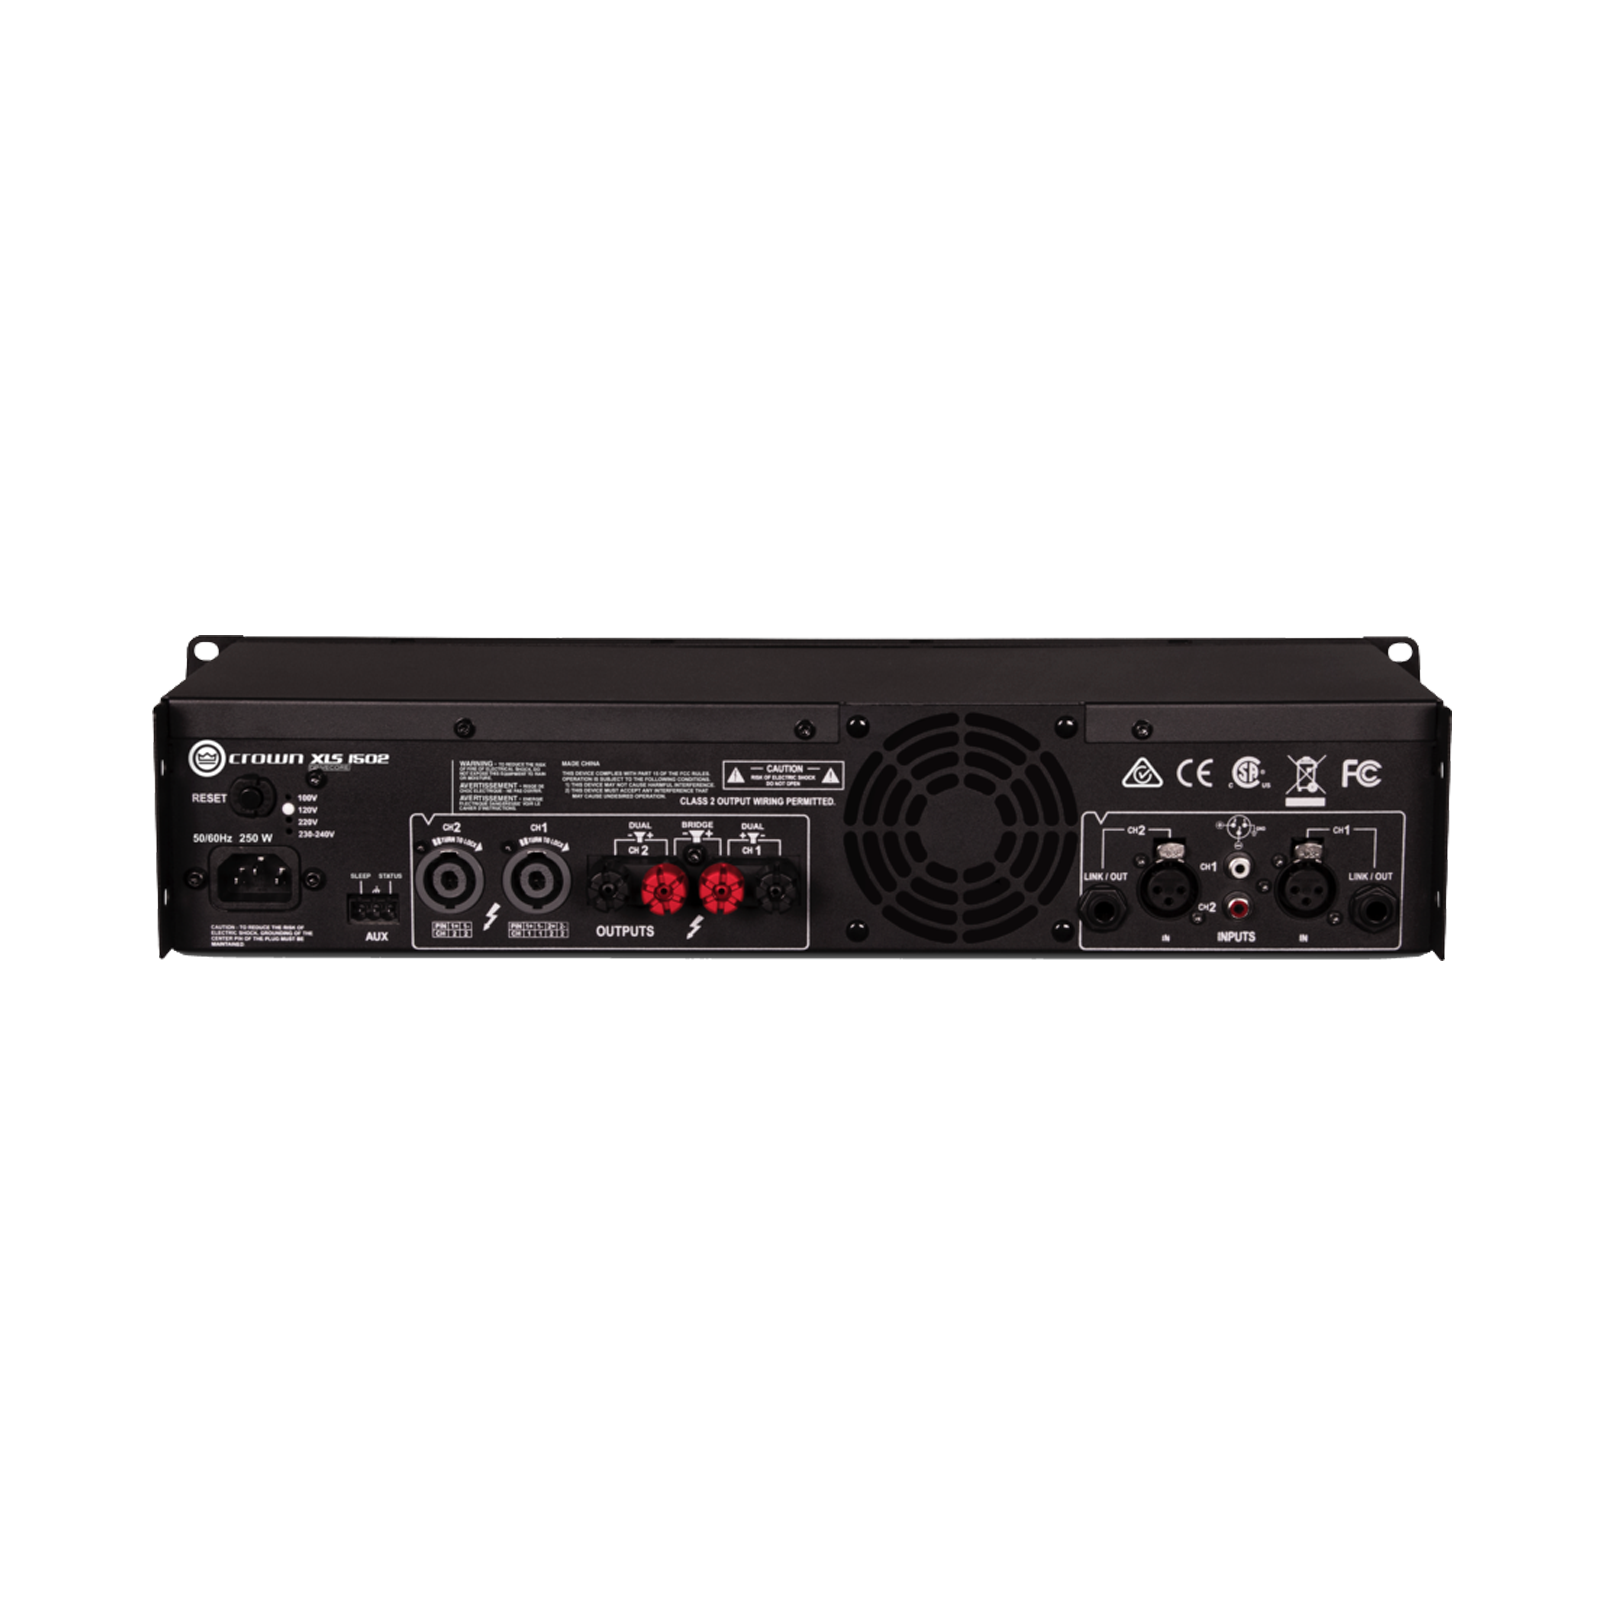 XLS 1502 - Black - Two-channel, 525W @ 4Ω power amplifier - Back